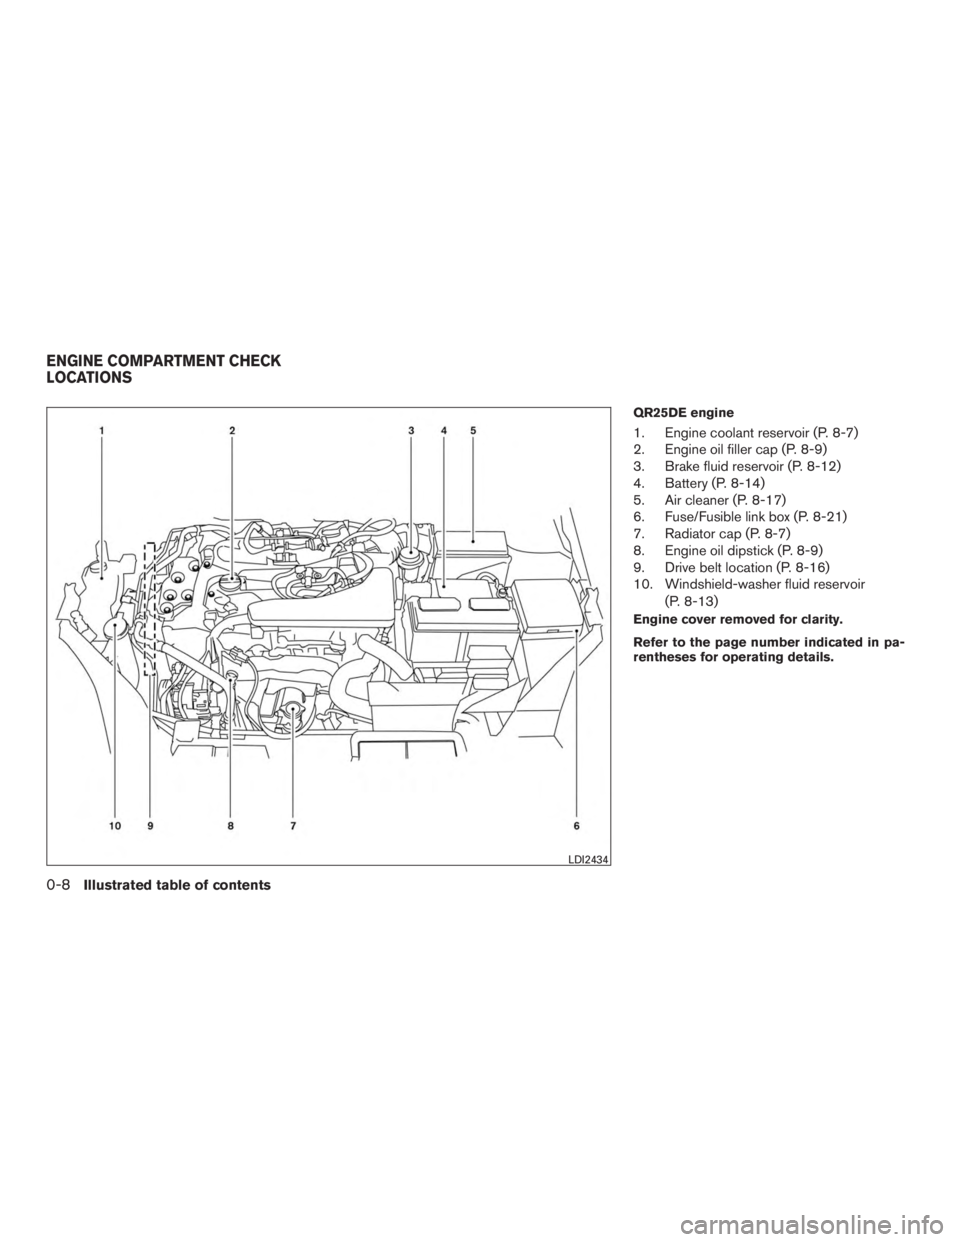 NISSAN ROGUE 2015  Owner´s Manual QR25DE engine
1. Engine coolant reservoir (P. 8-7)
2. Engine oil filler cap (P. 8-9)
3. Brake fluid reservoir (P. 8-12)
4. Battery (P. 8-14)
5. Air cleaner (P. 8-17)
6. Fuse/Fusible link box (P. 8-21)